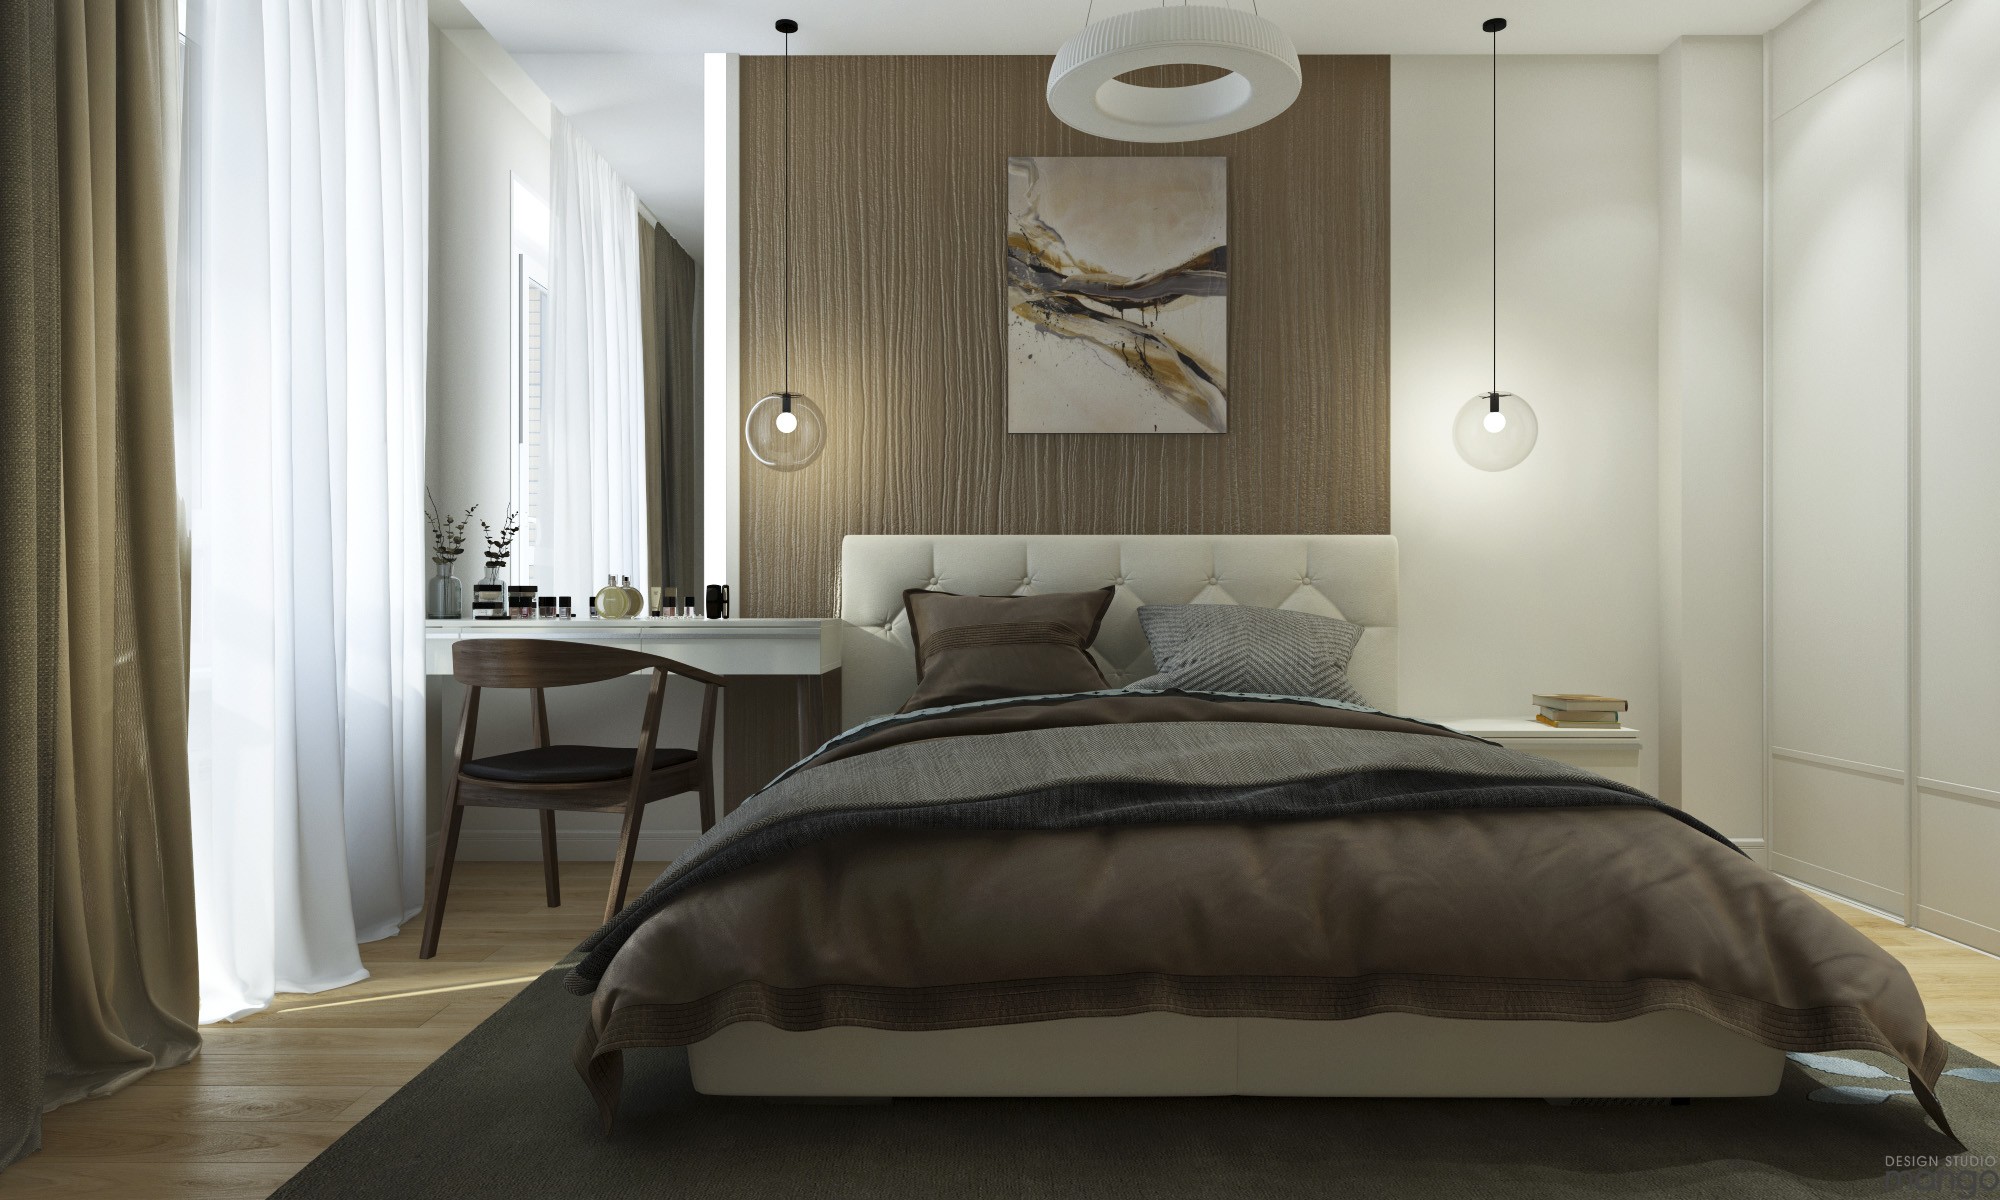 minimalist bedroom interior deisgn "width =" 2000 "height =" 1200 "srcset =" https://mileray.com/wp-content/uploads/2020/05/1588508977_749_How-To-Arrange-Interior-Bedroom-Designs-With-Stunning-Decor-That.jpg 2000w, https: / /mileray.com/wp-content/uploads/2016/10/Design-Studio-Mango1-6-300x180.jpg 300w, https://mileray.com/wp-content/uploads/2016/10/Design-Studio- Mango1-6-768x461.jpg 768w, https://mileray.com/wp-content/uploads/2016/10/Design-Studio-Mango1-6-1024x614.jpg 1024w, https://mileray.com/wp- content / uploads / 2016/10 / Design-Studio-Mango1-6-696x418.jpg 696w, https://mileray.com/wp-content/uploads/2016/10/Design-Studio-Mango1-6-1068x641.jpg 1068w, https://mileray.com/wp-content/uploads/2016/10/Design-Studio-Mango1-6-700x420.jpg 700w "sizes =" (maximum width: 2000px) 100vw, 2000px